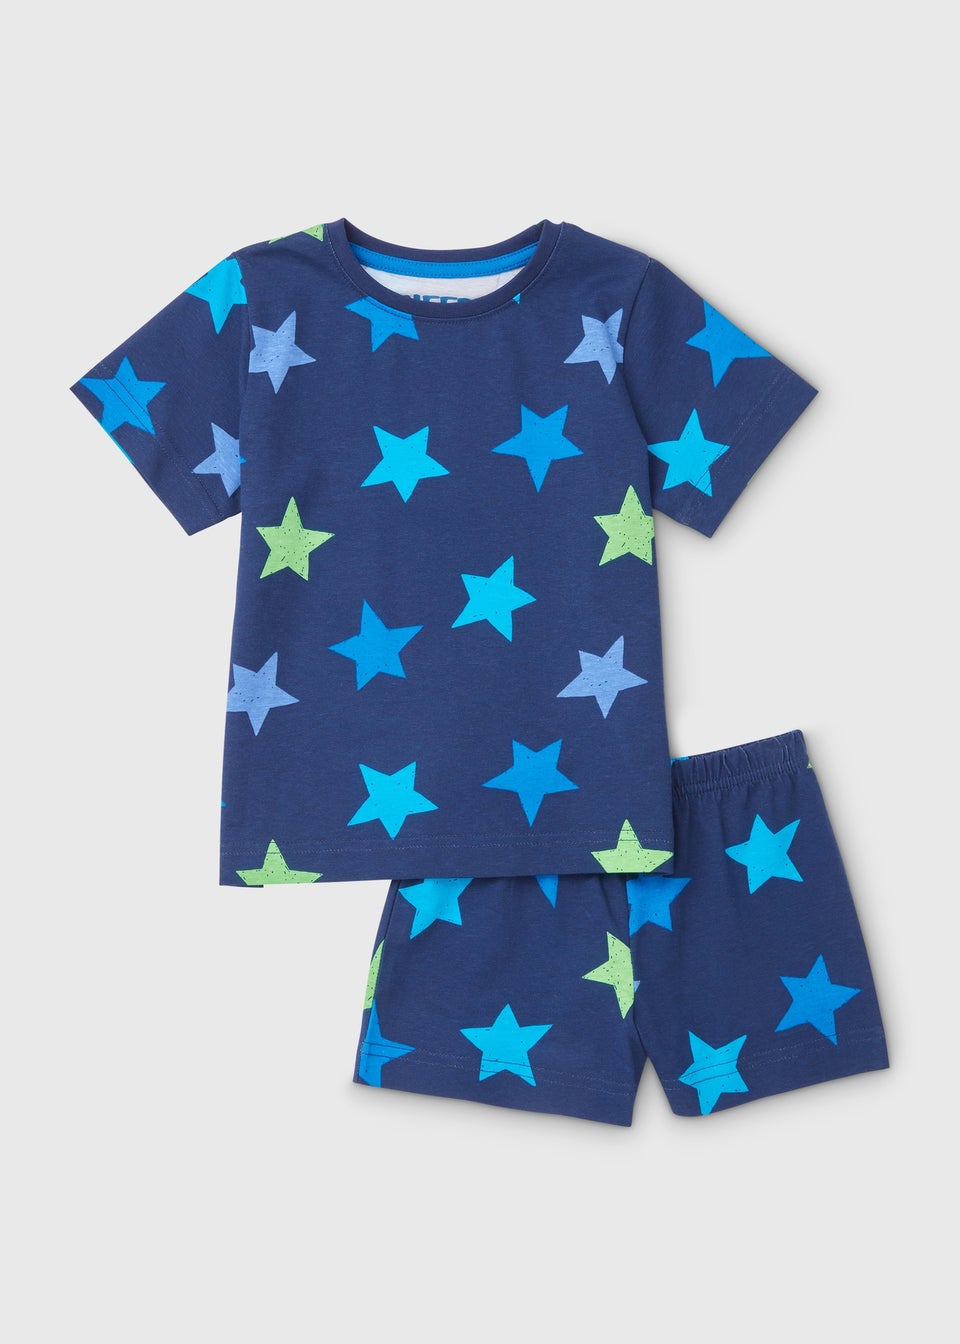 Boys Navy Star Shortie Pyjama Set (9mths-5yrs)